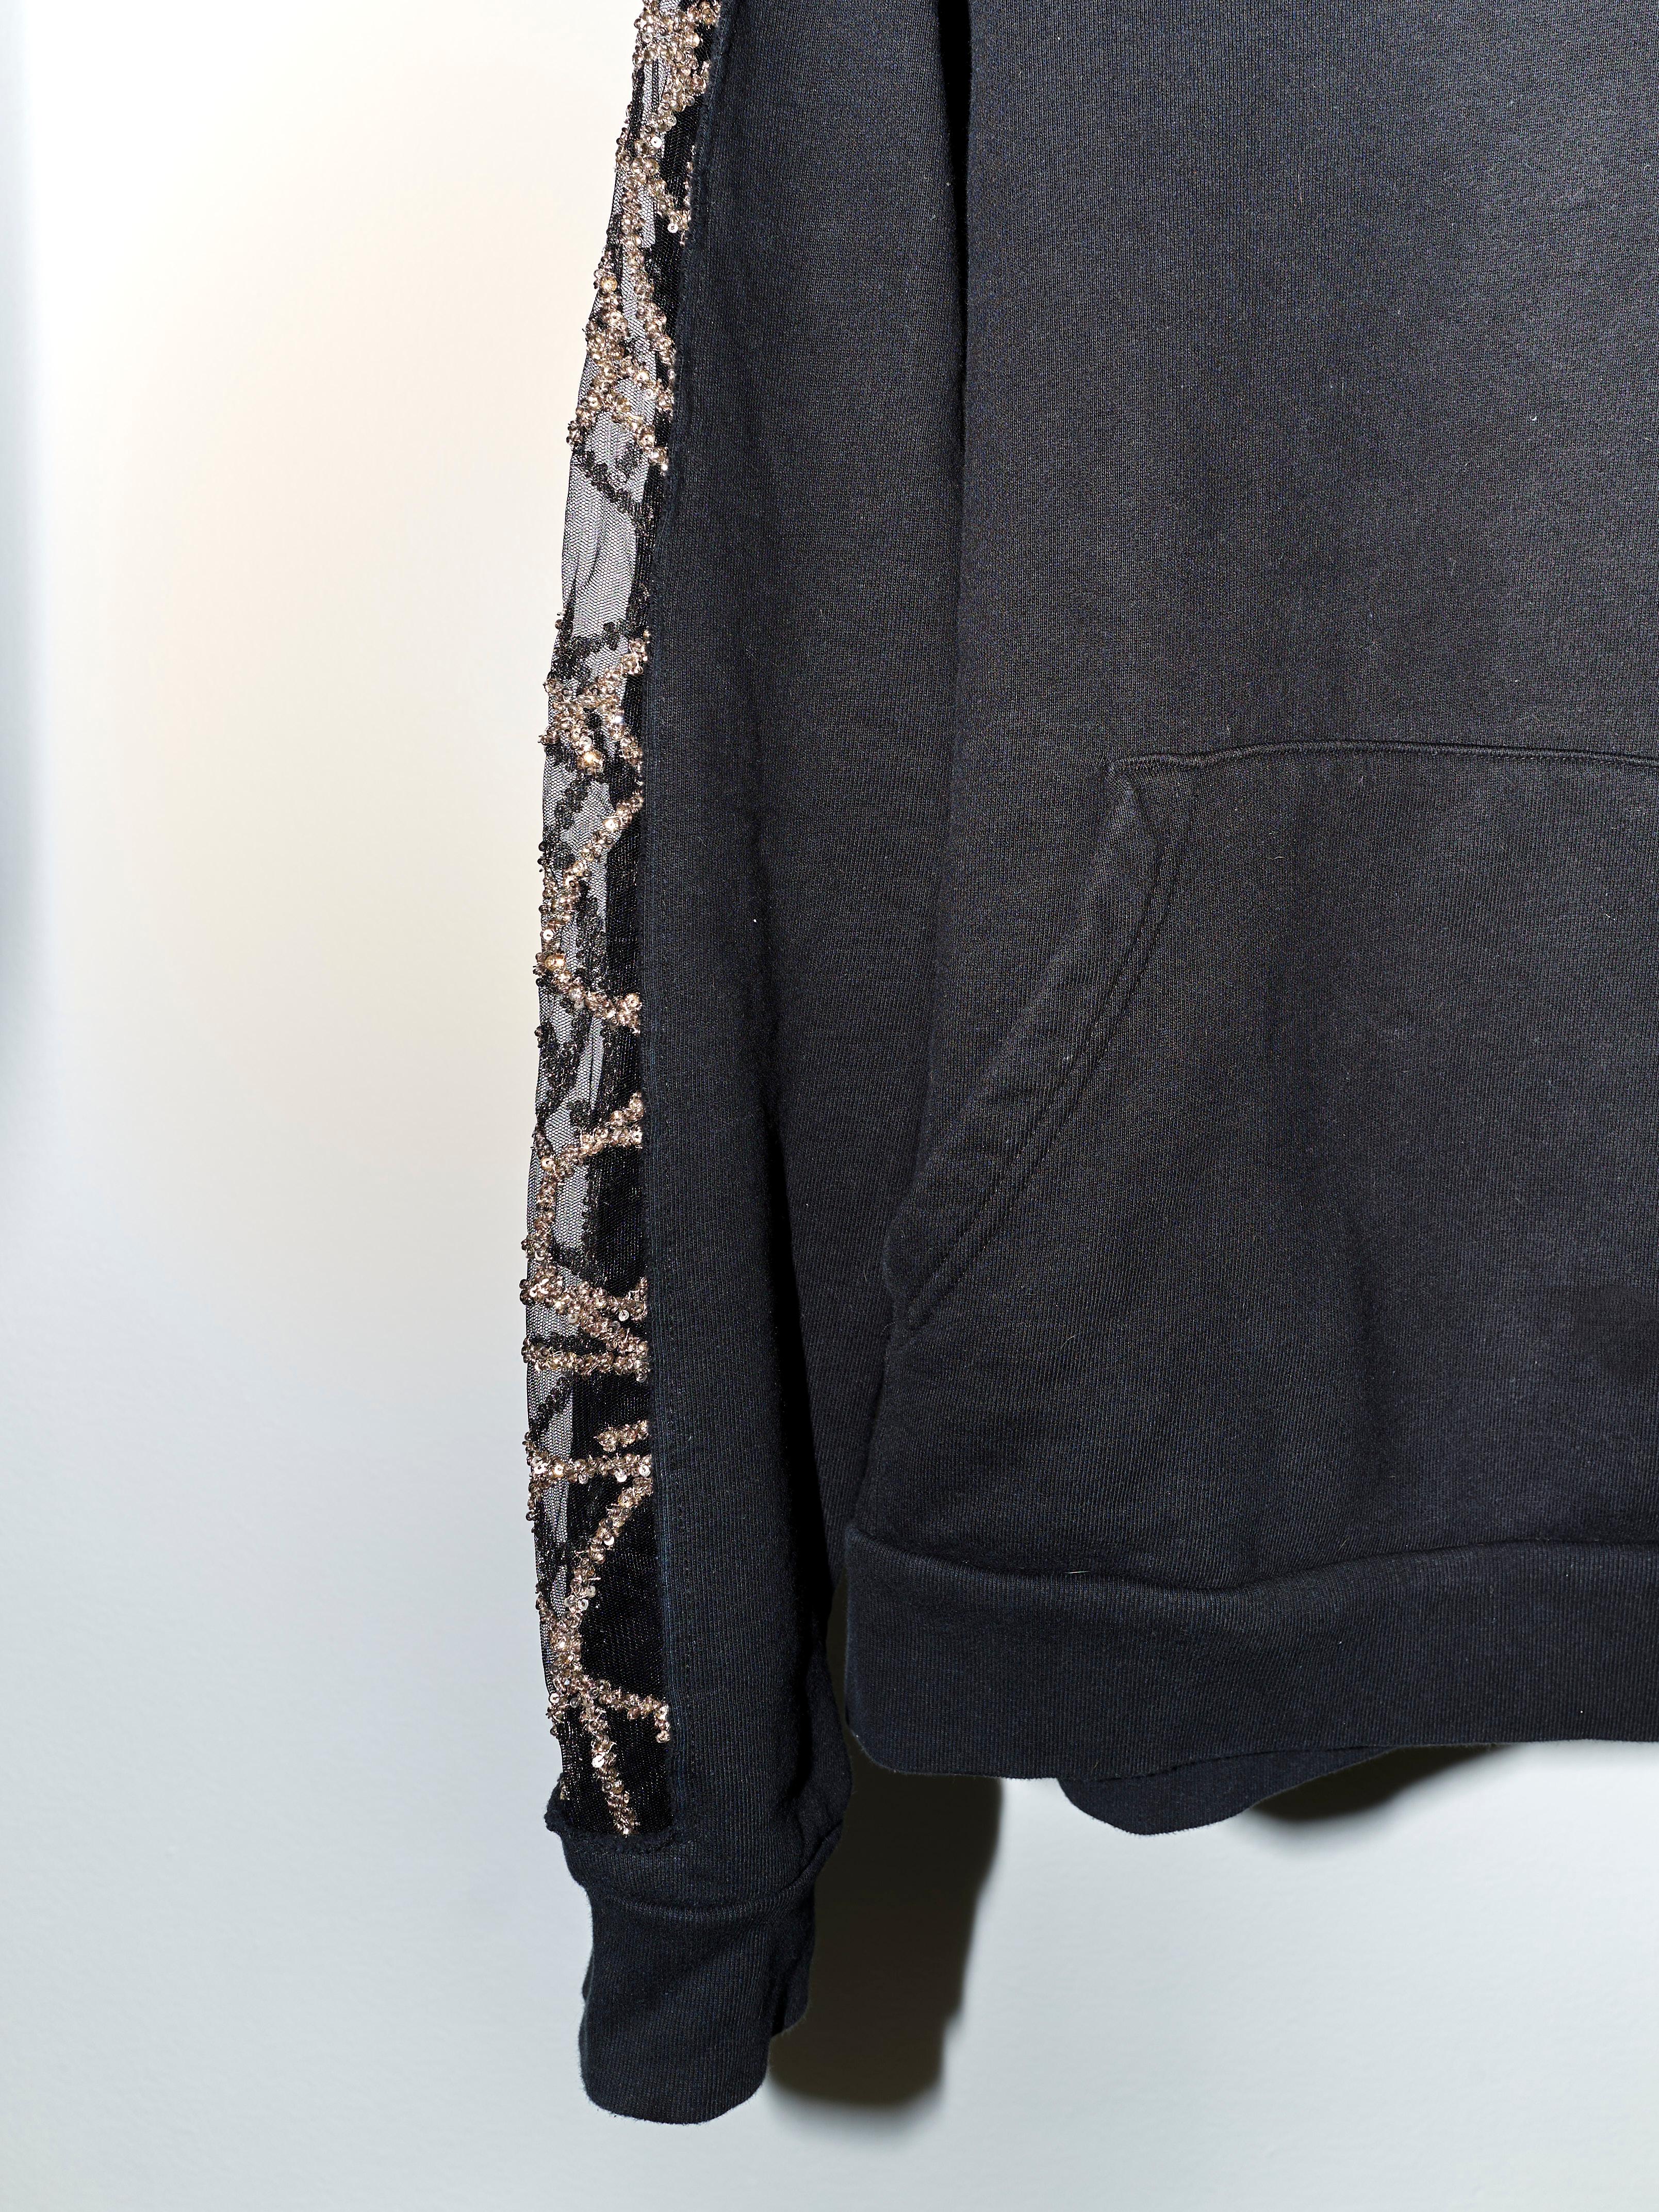 Black Hoodie Sweatshirt Transparent Sheer Mesh Chrystal Embroidery J Dauphin 2